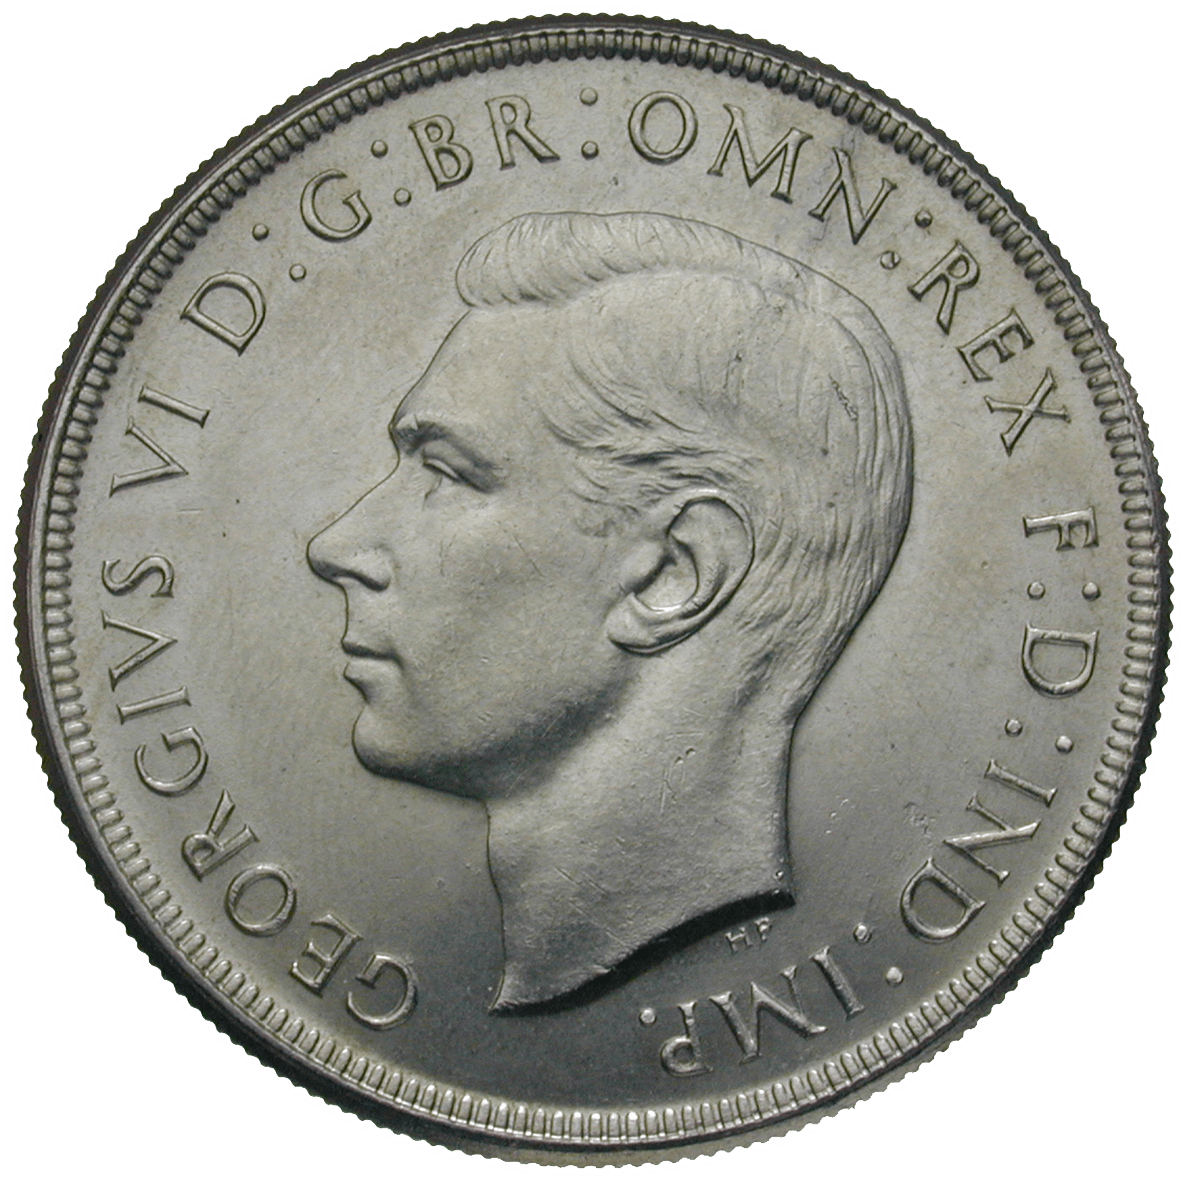 Vereinigtes Königreich Grossbritannien für Australien, Georg VI., 1 Crown 1937 (obverse)